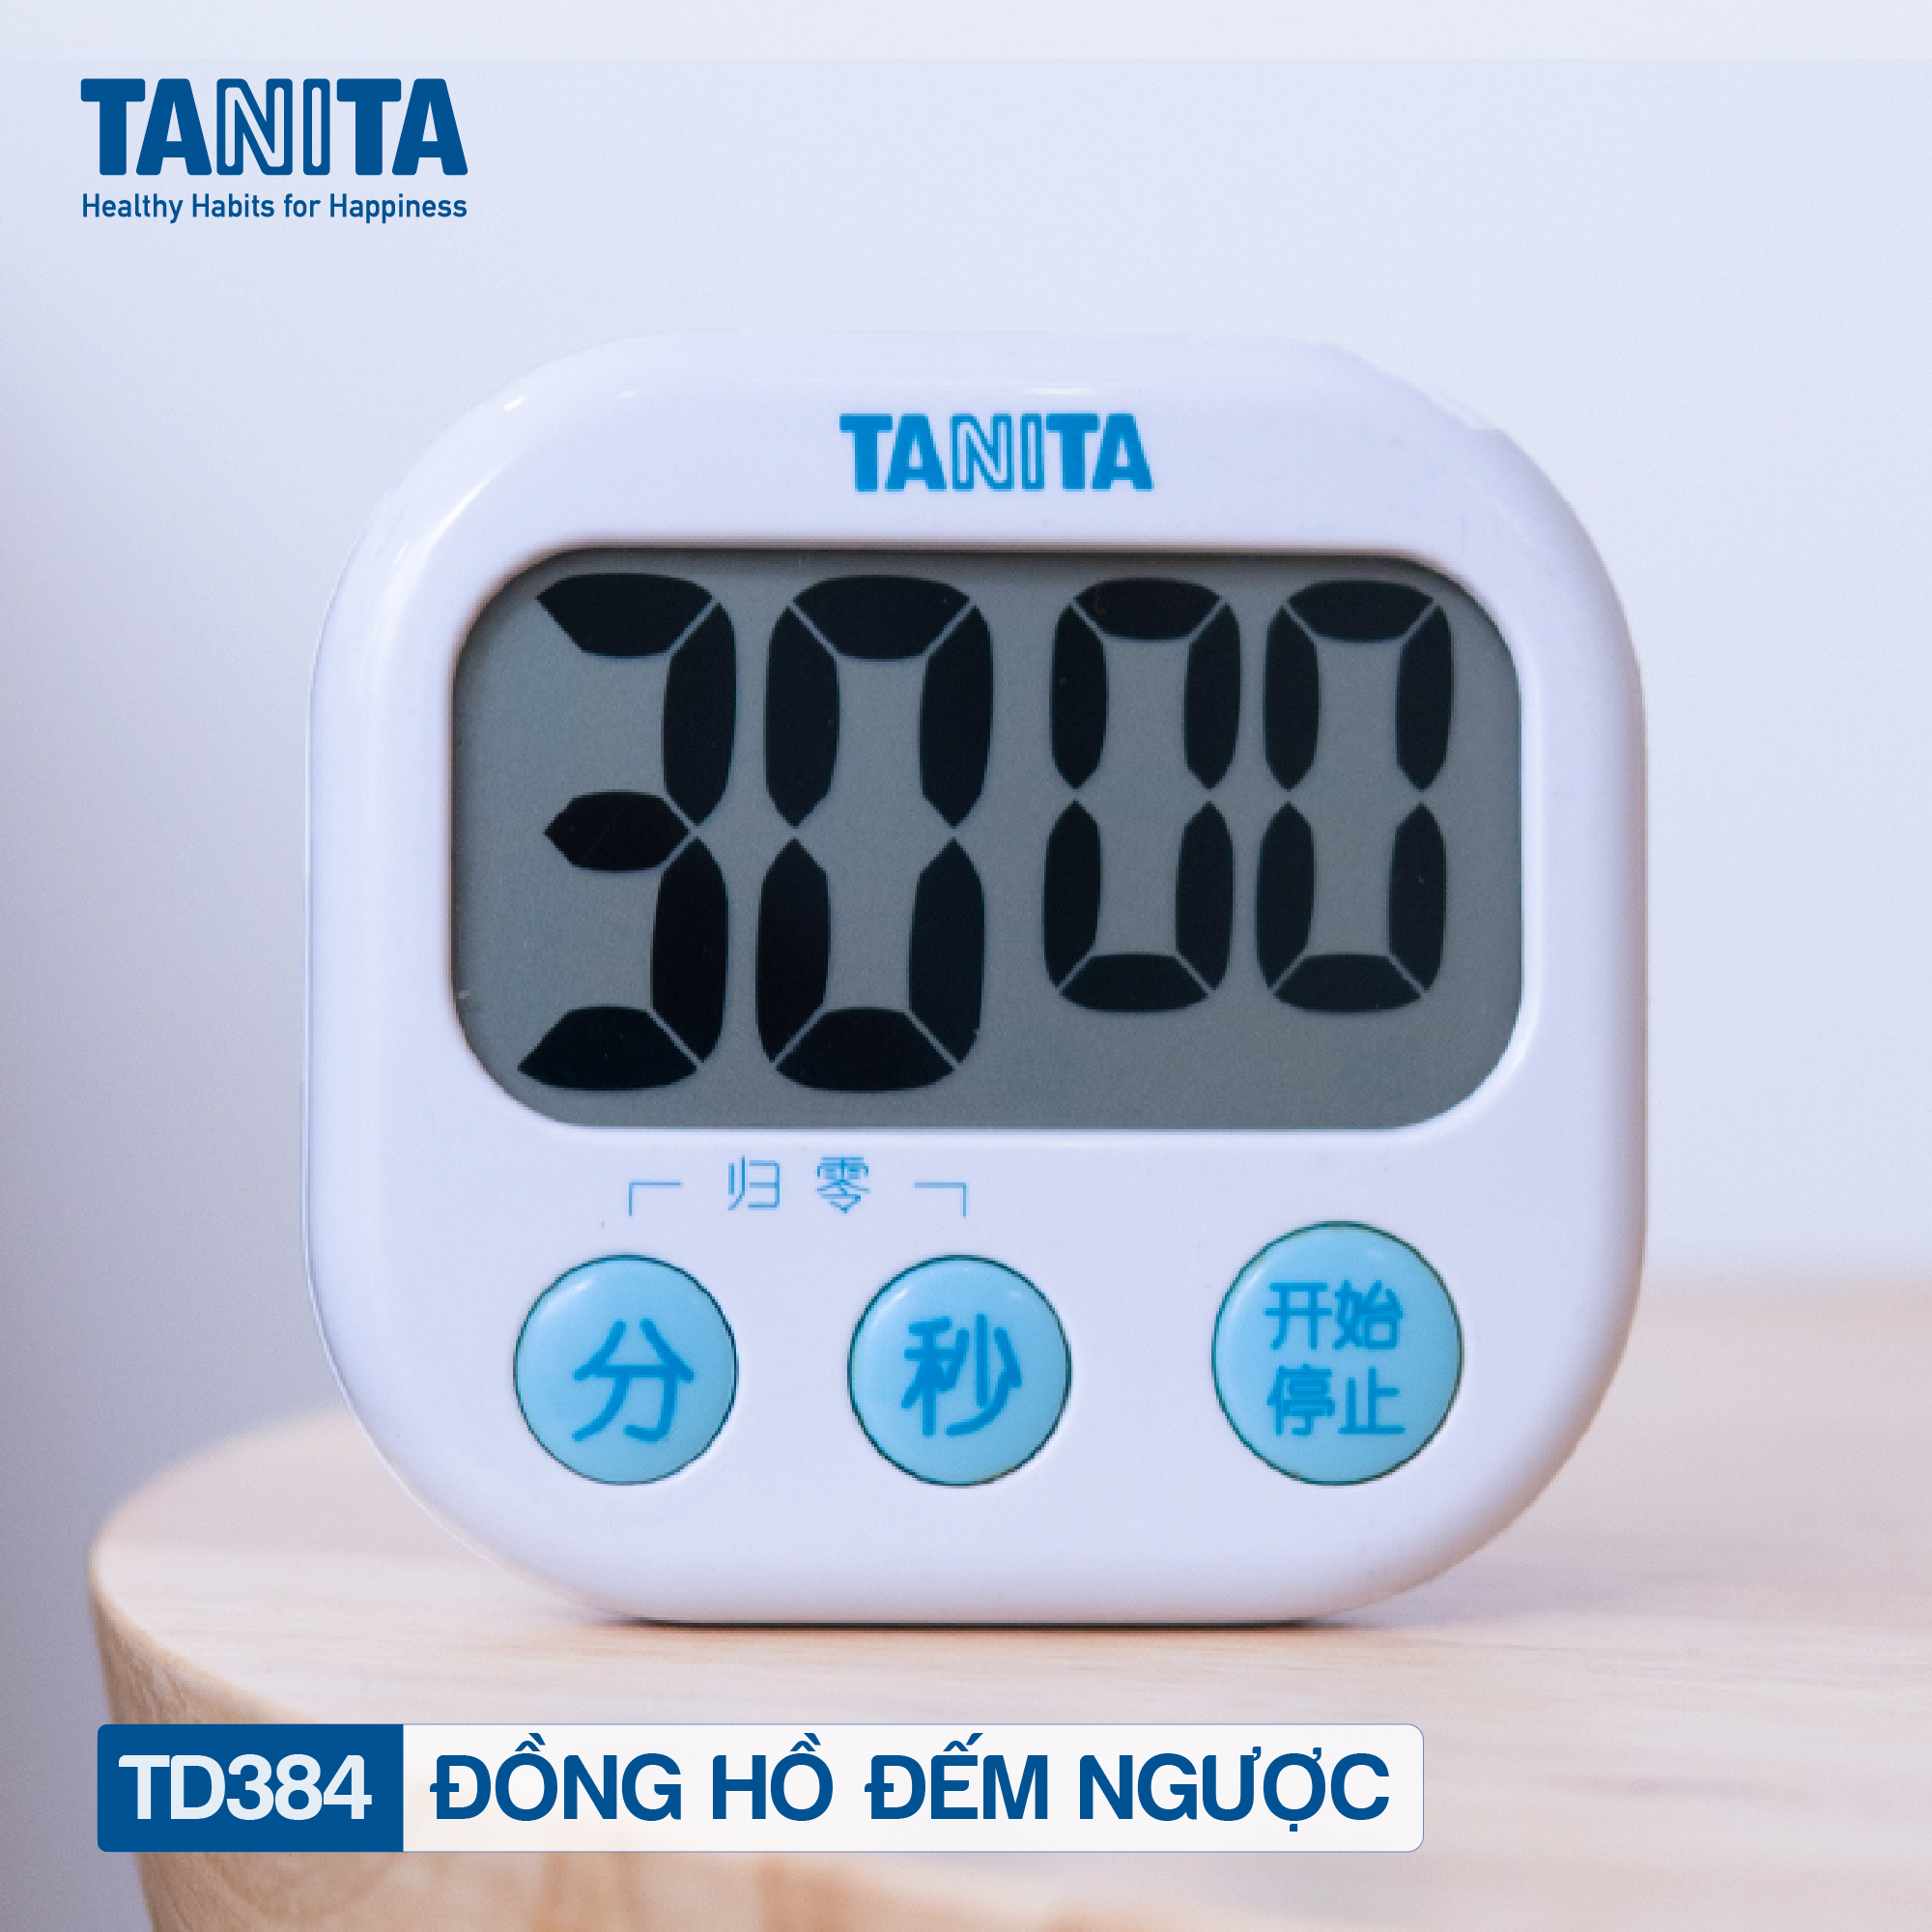 Đồng hồ đếm ngược Tanita TD384,Đồng hồ mini đếm ngược bấm giờ,Đồng hồ mini bấm giờ,Đồng hồ hẹn giờ,Đồng hồ bếp,Đồng hồ đếm ngược thời gian,đồng hồ bấm giờ đếm ngược,Đồng hồ điện tử đếm giờ,Đồng hồ điện tử đếm ngược,Đồng hồ nhật bản